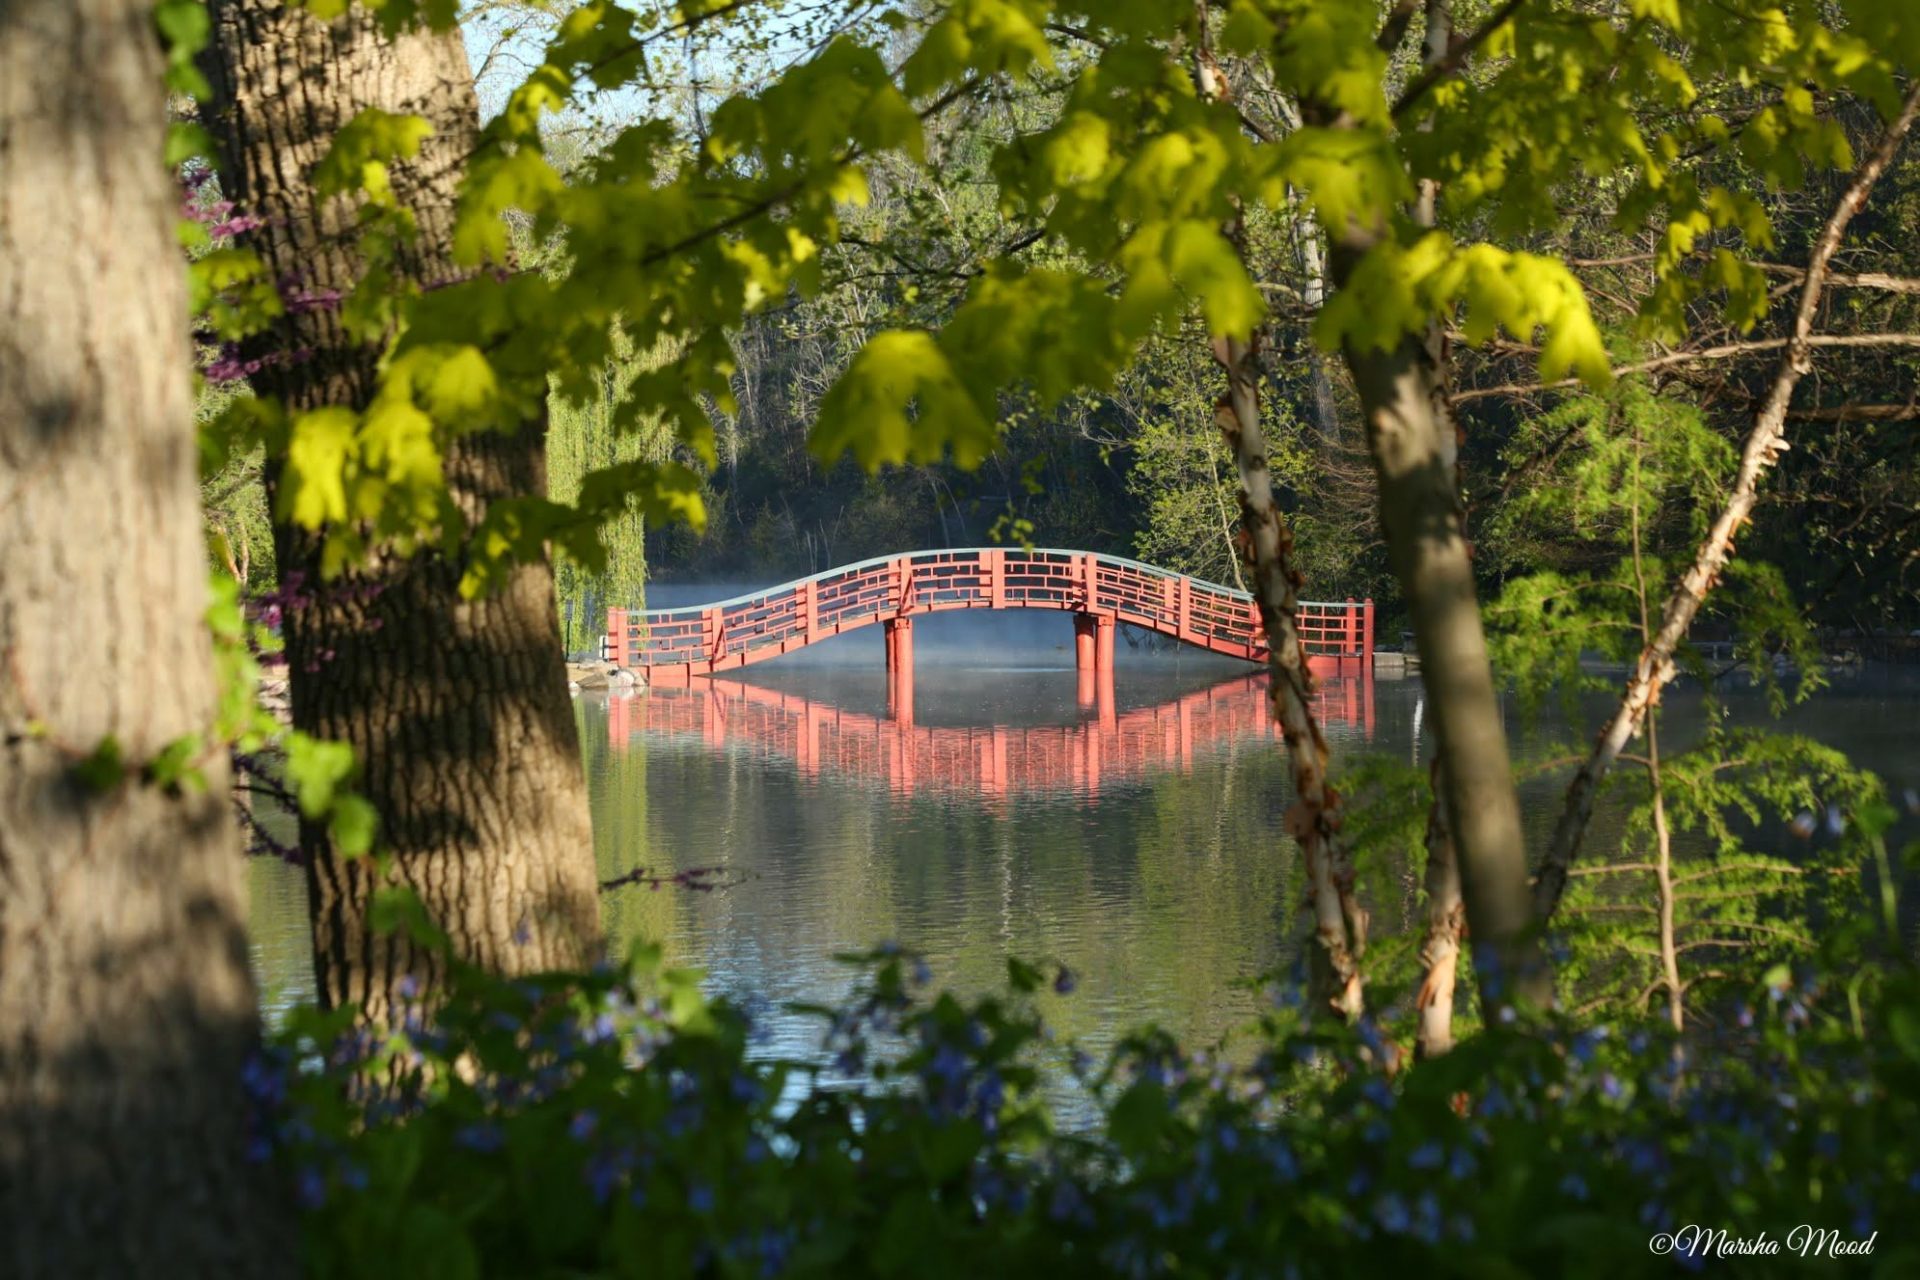 Rotary Botanical Gardens' iconic Red Japanese Bridge